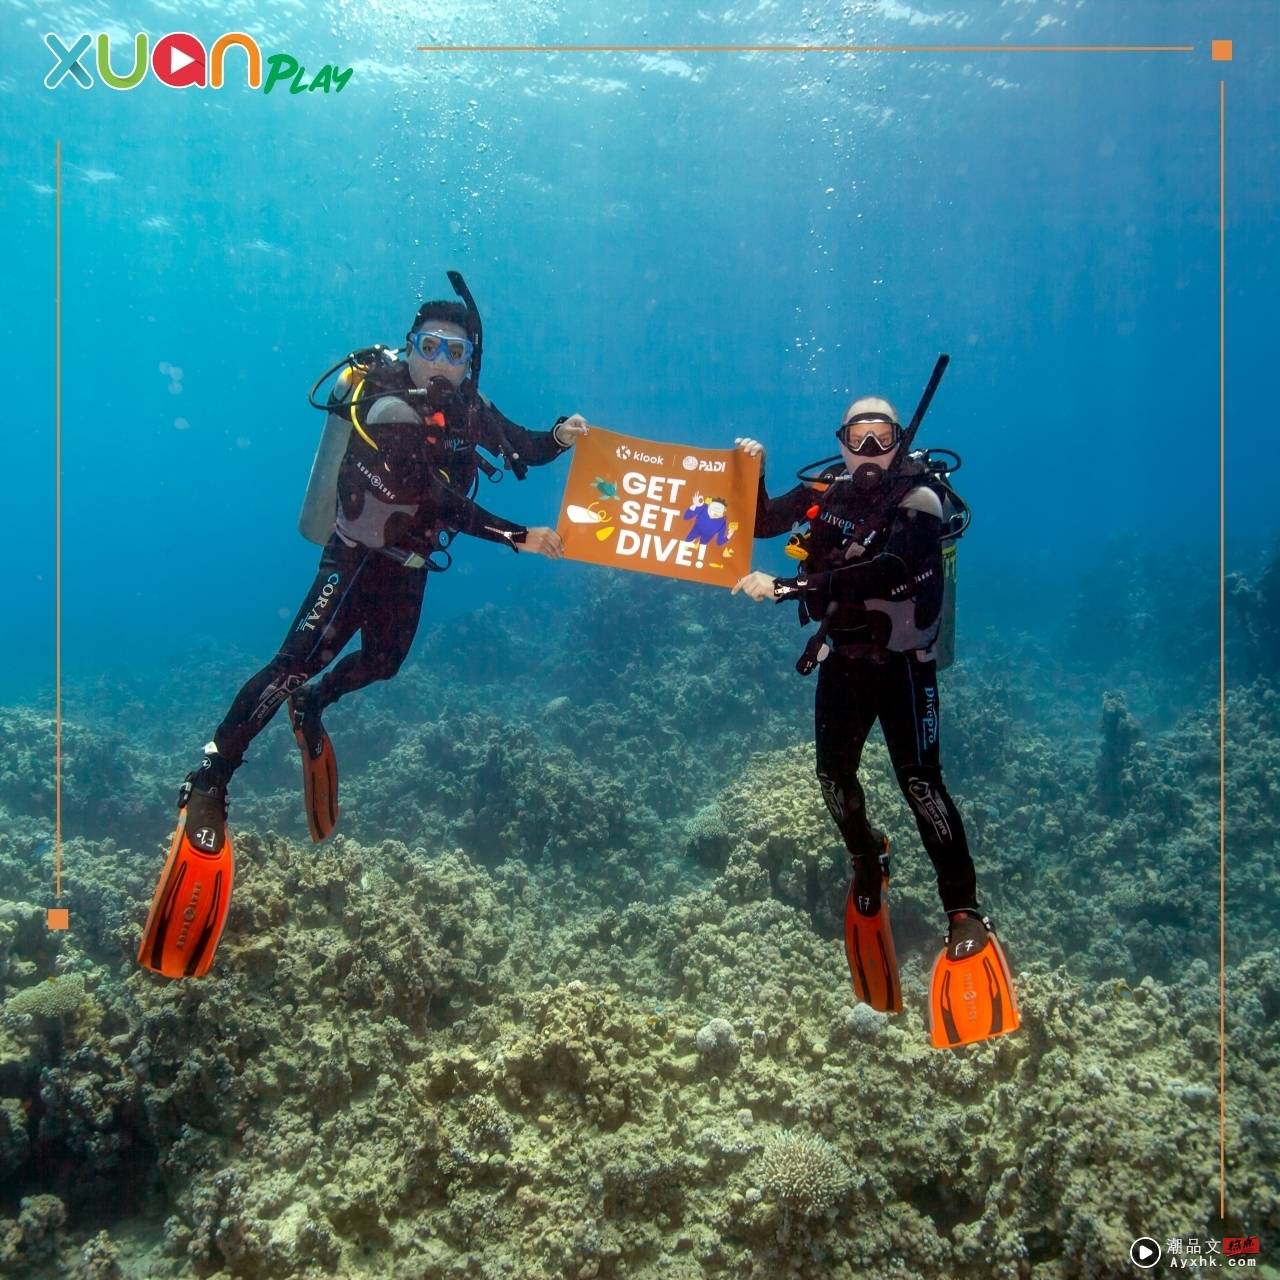 旅游 | 最佳潜水季节来了! 四月至九月宜与海龟共游 马来西亚五大潜点推荐 图1张